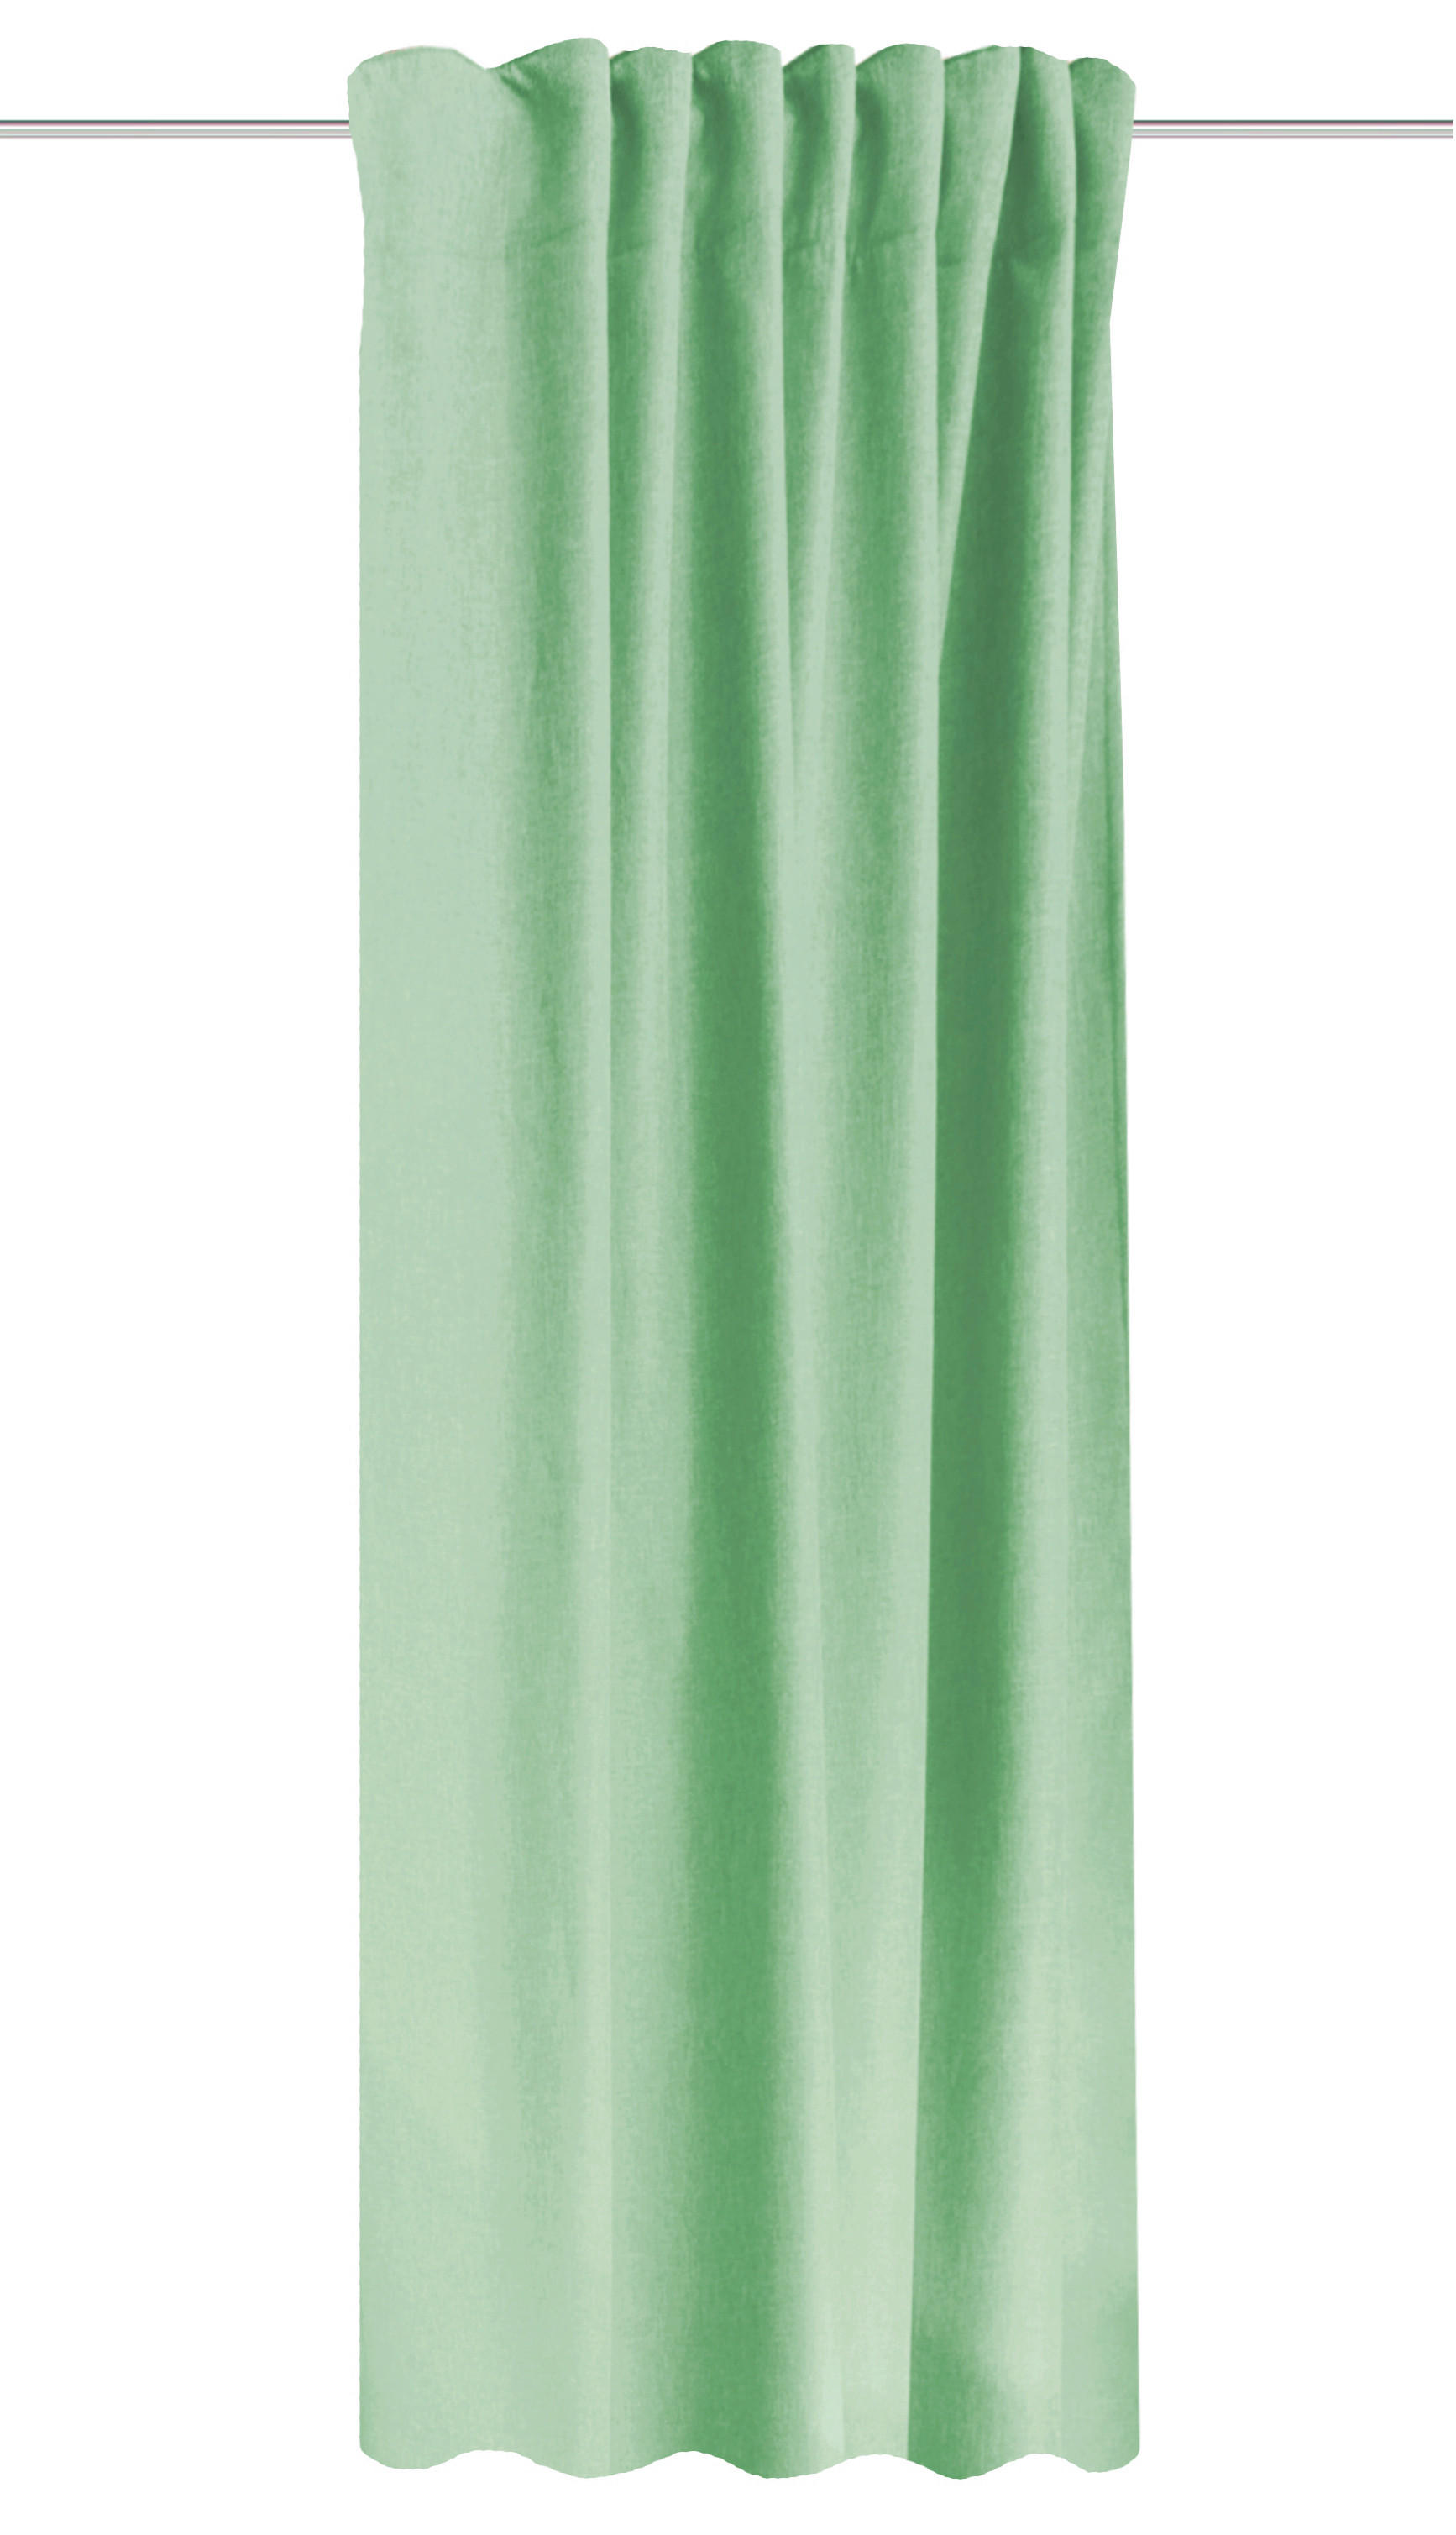 WÄRMESCHUTZVORHANG  blickdicht  135/245 cm   - Mintgrün, Basics, Textil (135/245cm) - Schmidt W. Gmbh